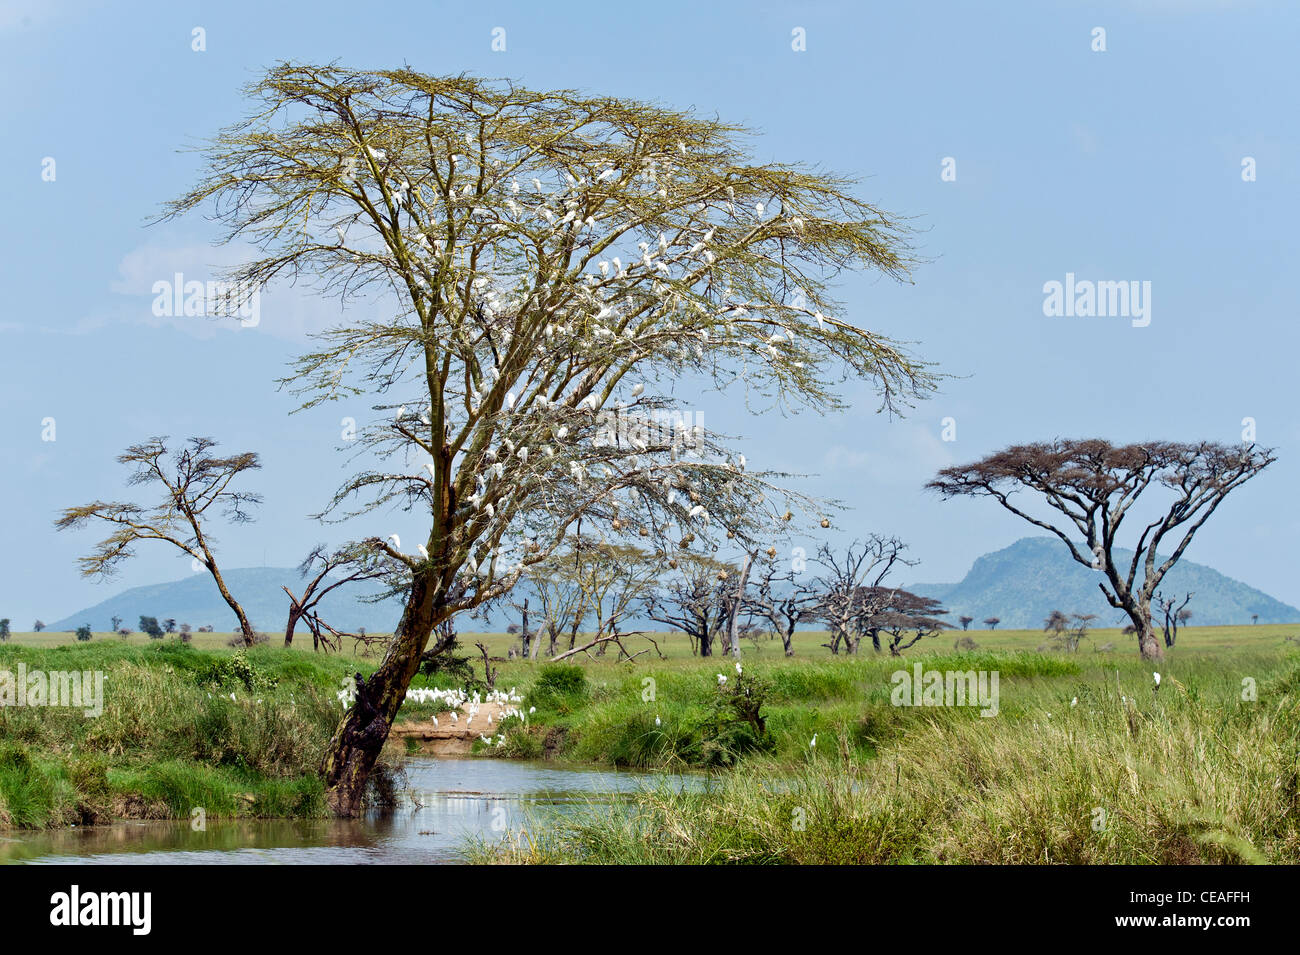 Troupeau d'aigrettes dans un acacia arbres à écorce jaune (Acacia xanthophloea) au Serengeti en Tanzanie Seronera Banque D'Images